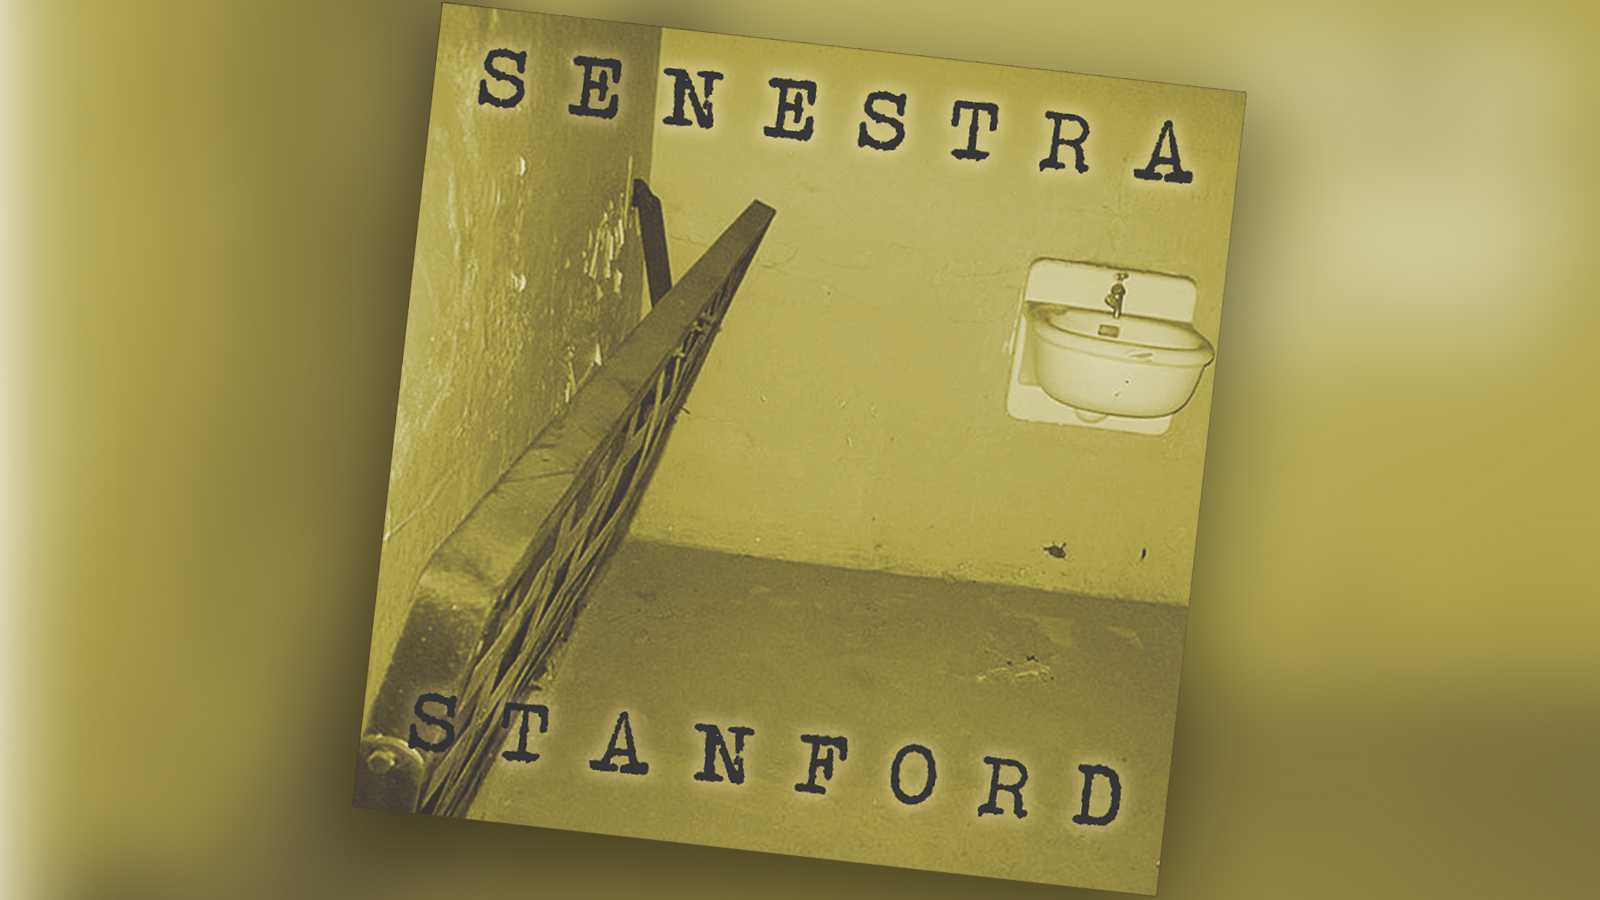 A Soundtrack for Stanford Jay Lewis marvels at Senestra's compelling debut